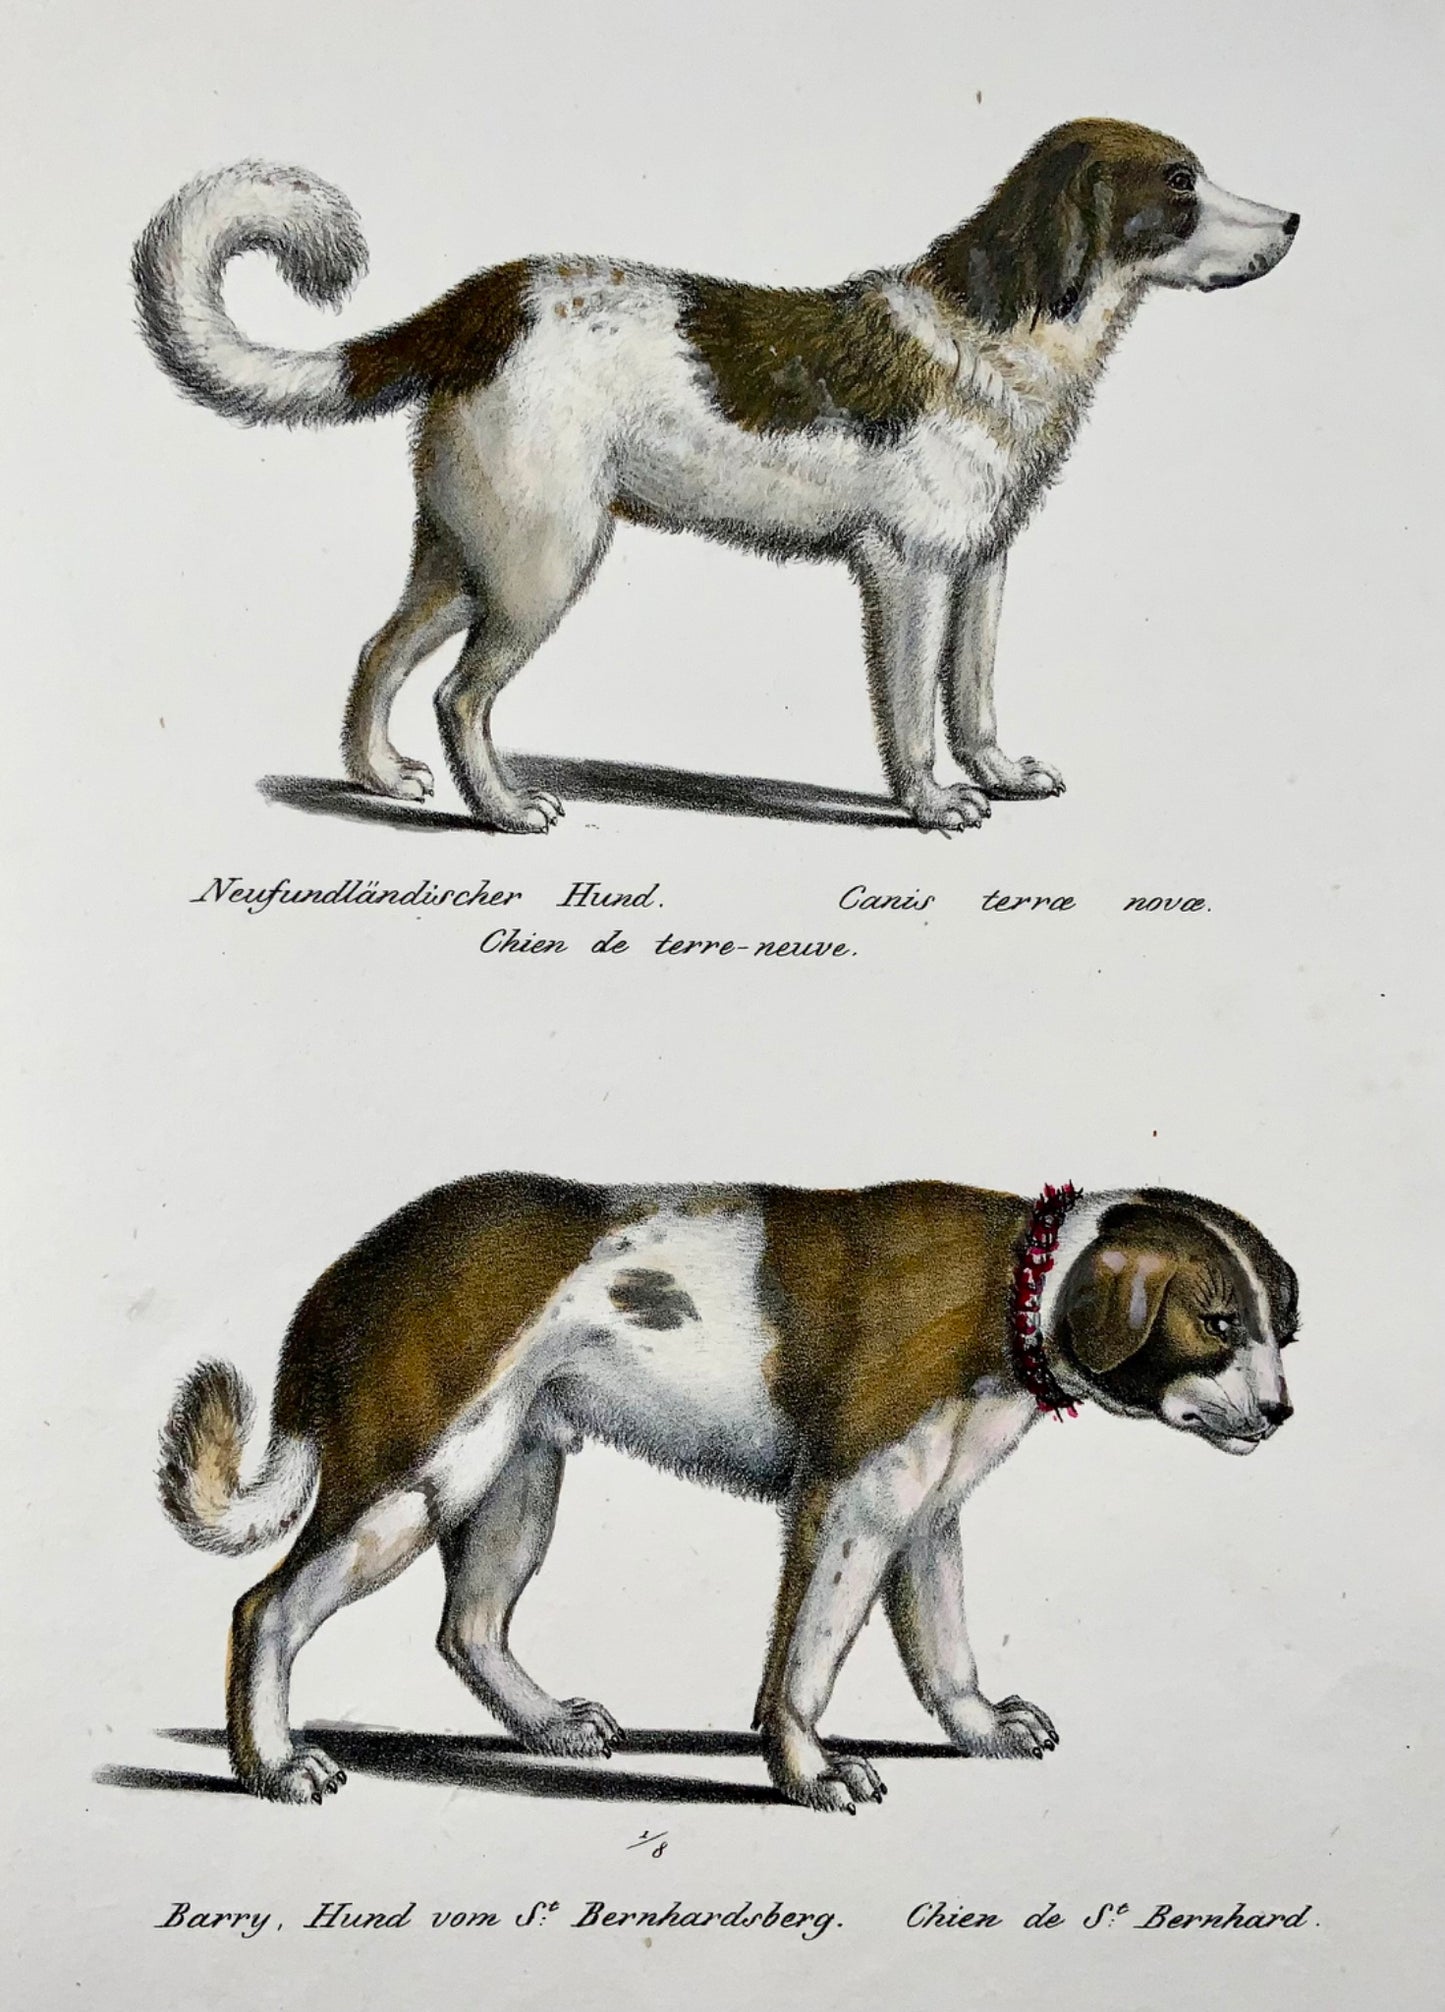 1824 Dog breeds, St. Bernhard, Newfoundland, Brodtmann, hand coloured, folio, mammal